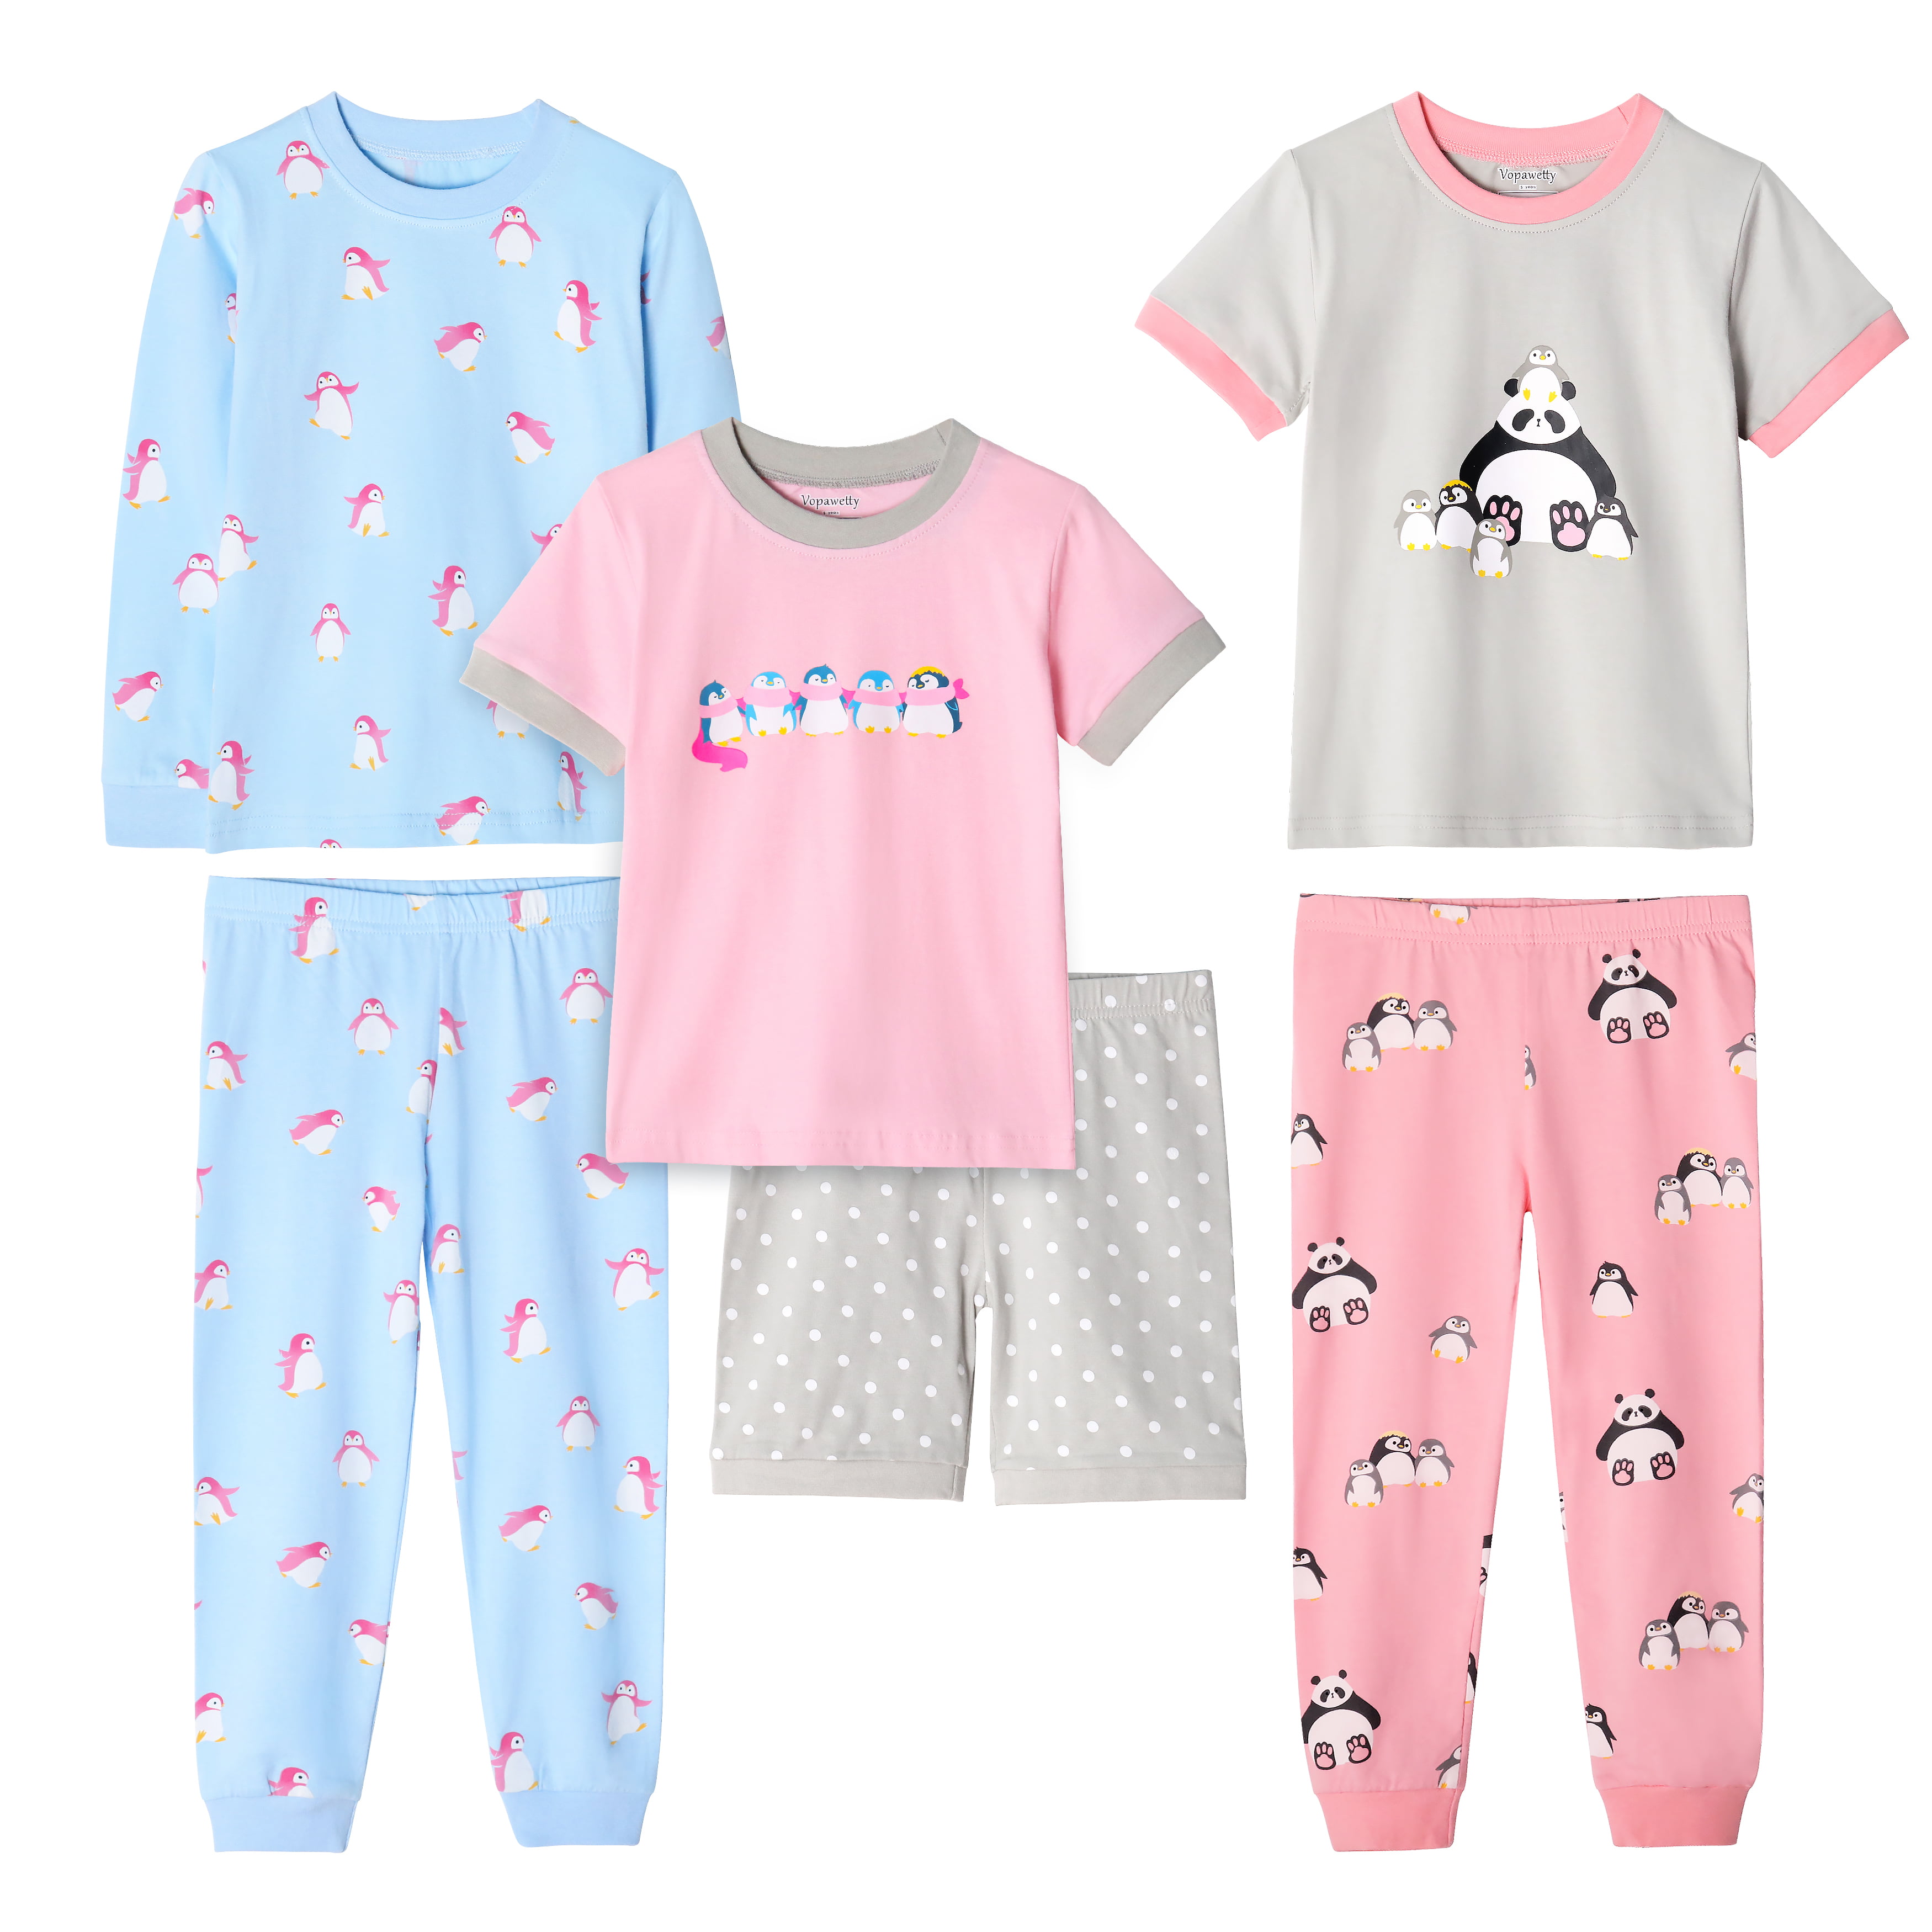 Vopawetty Girls' Cotton Summer Pajama Set Sleepwear 